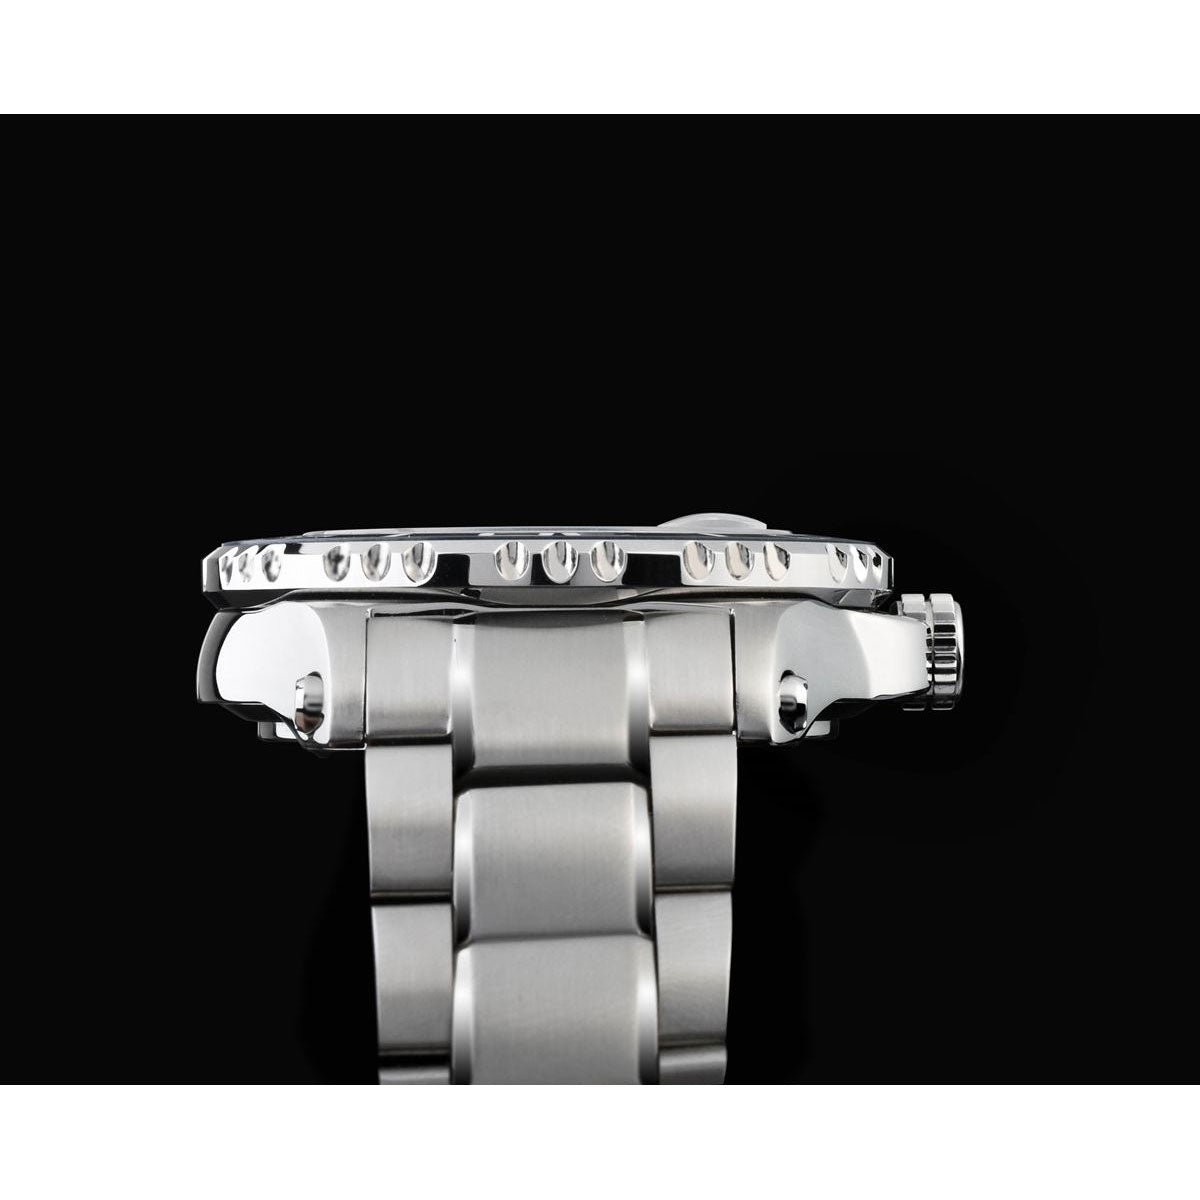 ケンテックス KENTEX マリンマン シーアングラ 自動巻き 腕時計 時計 メンズ 日本製 S706X-1